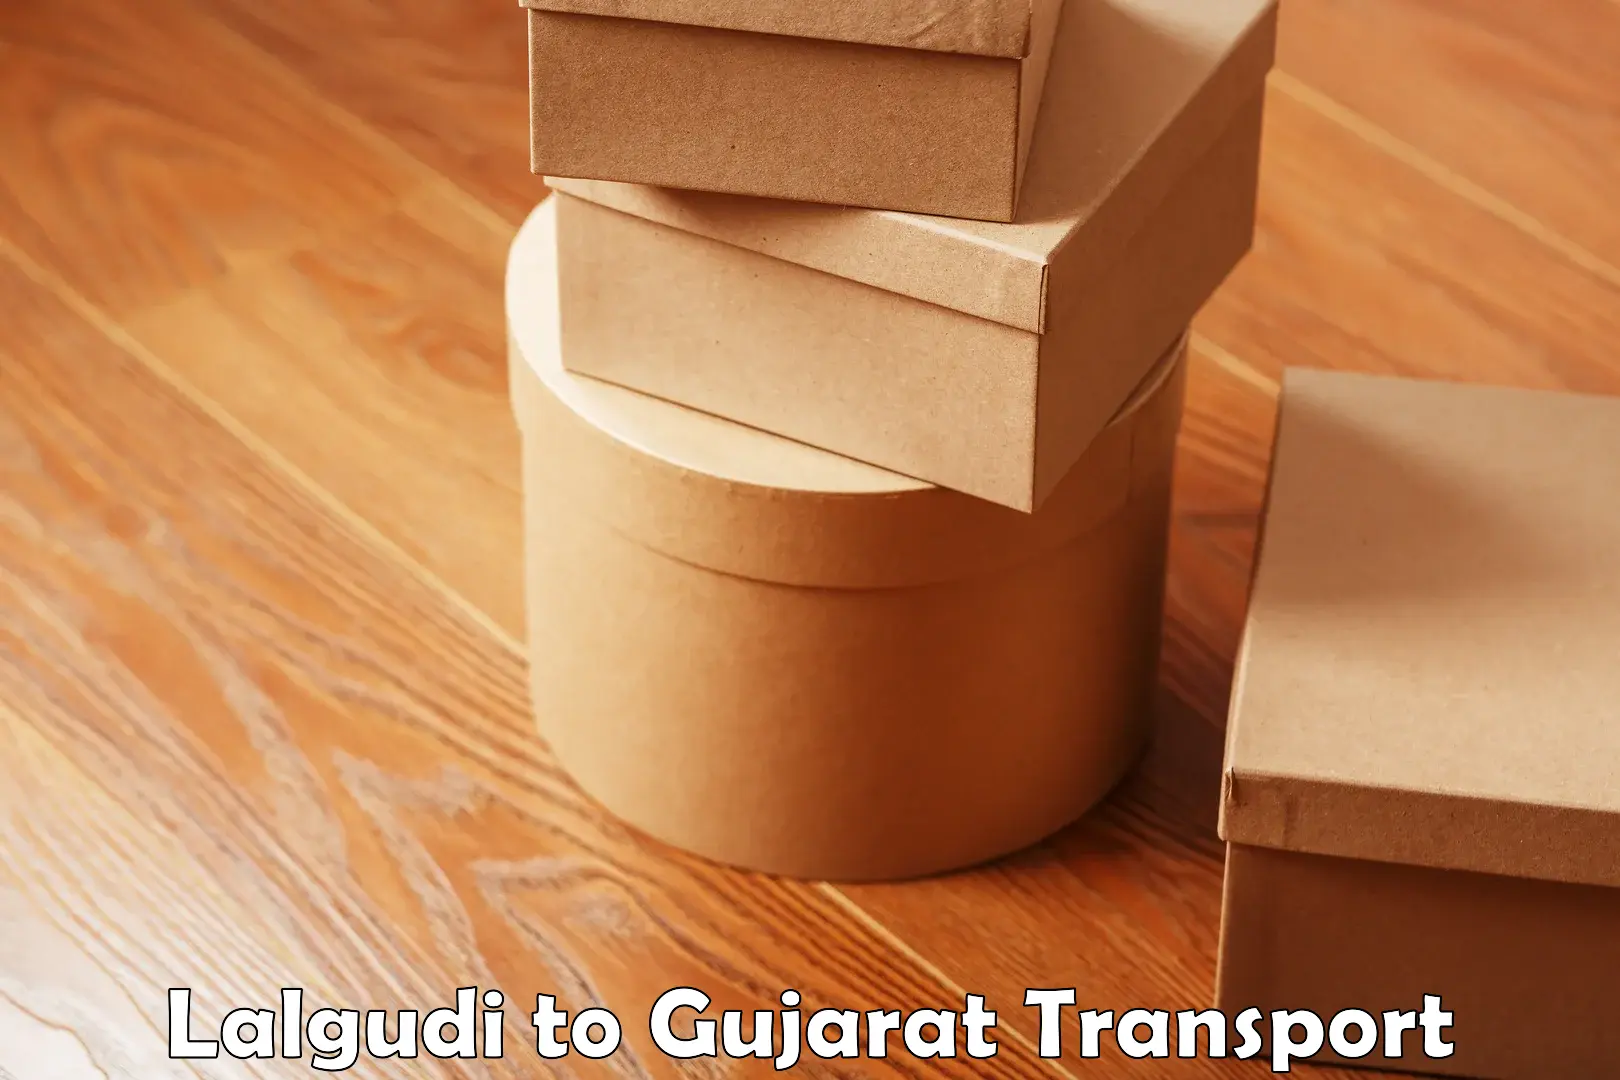 Nearest transport service Lalgudi to Patan Gujarat